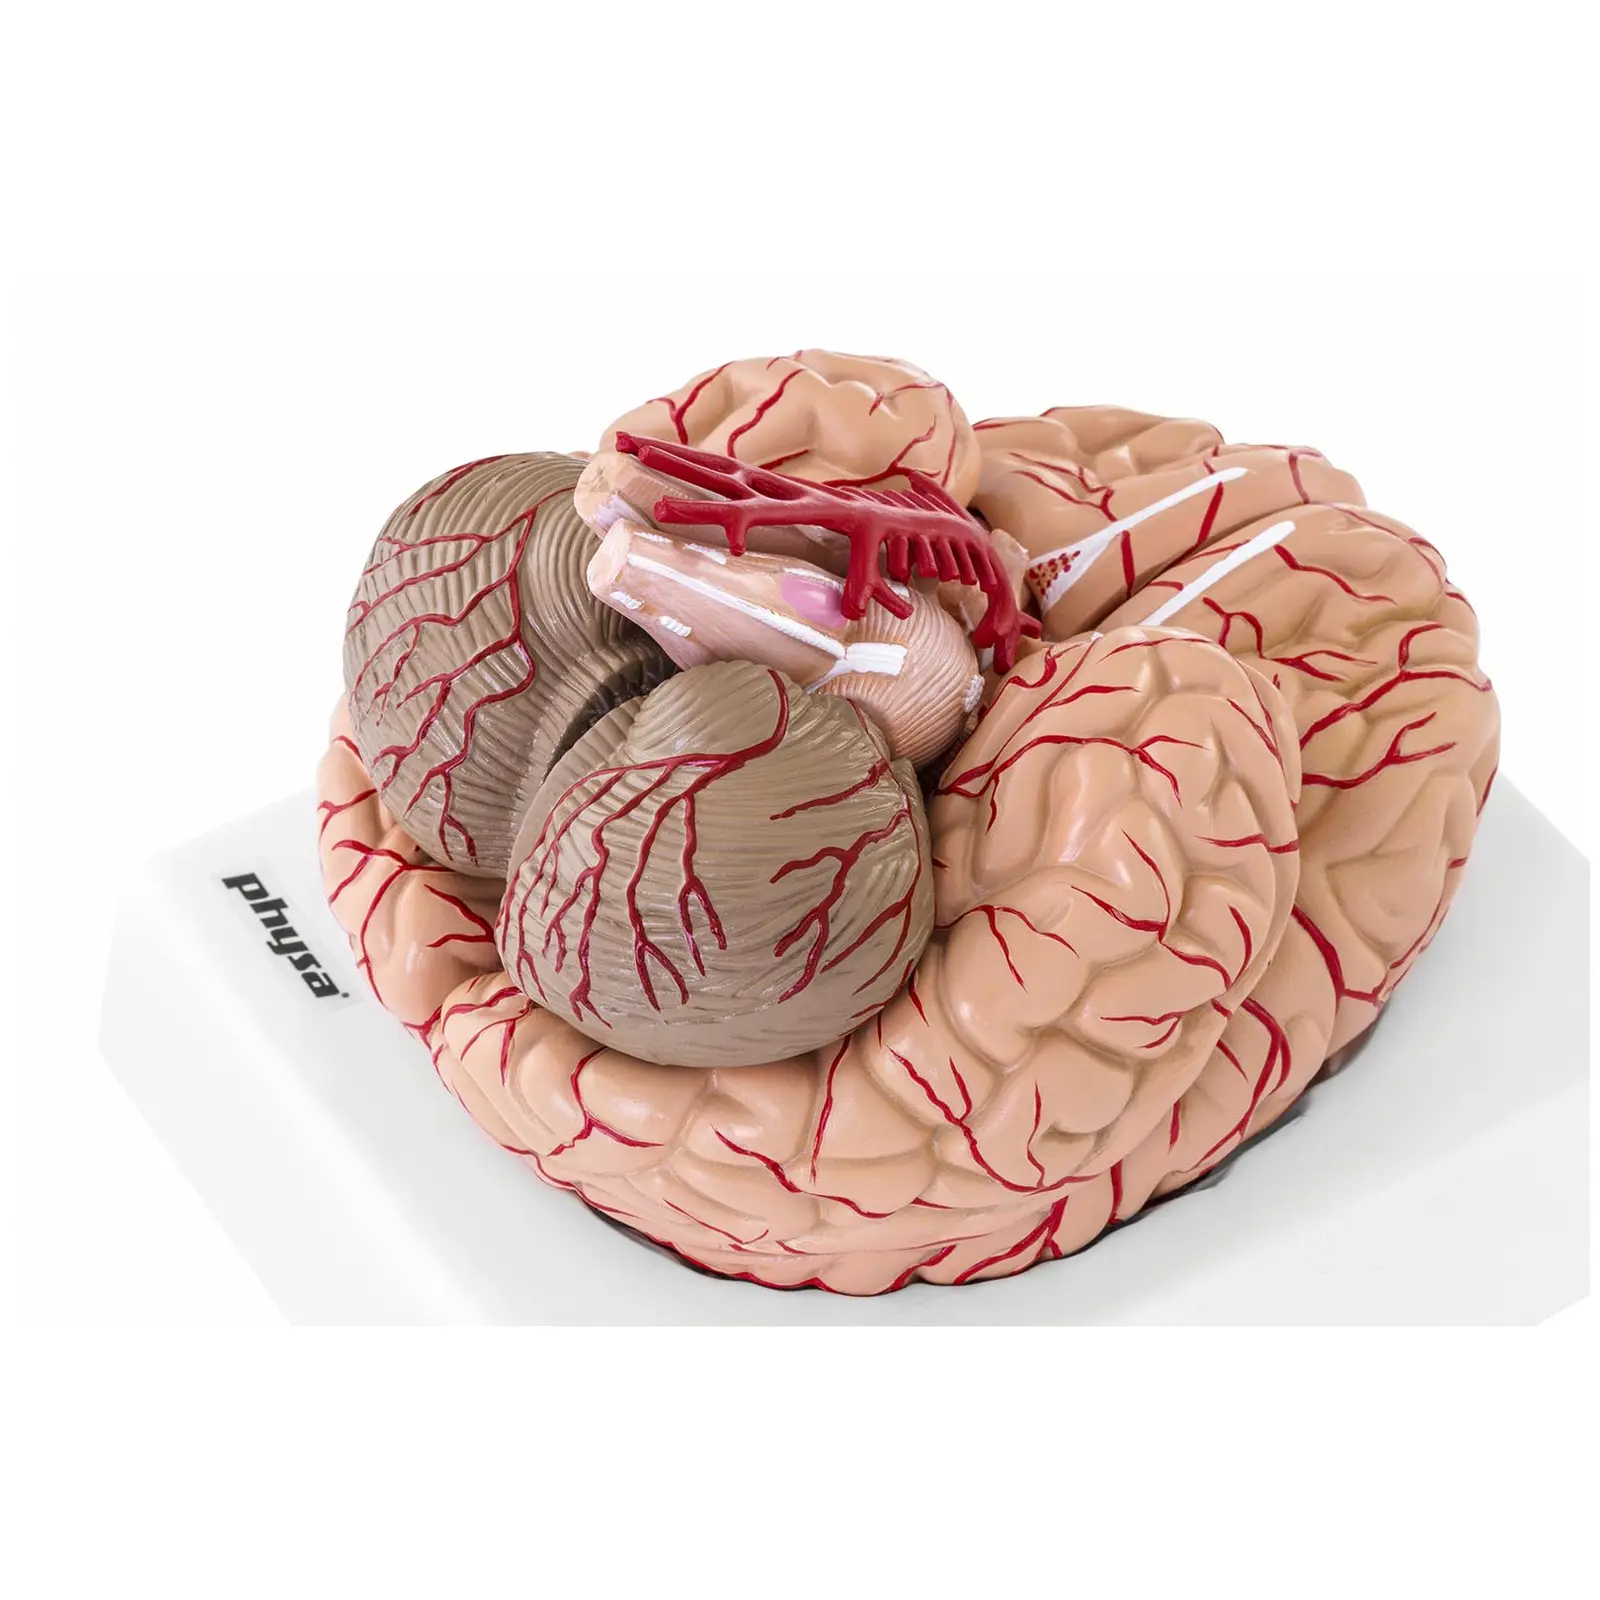 Model možganov - 9 segmentov - v naravni velikosti